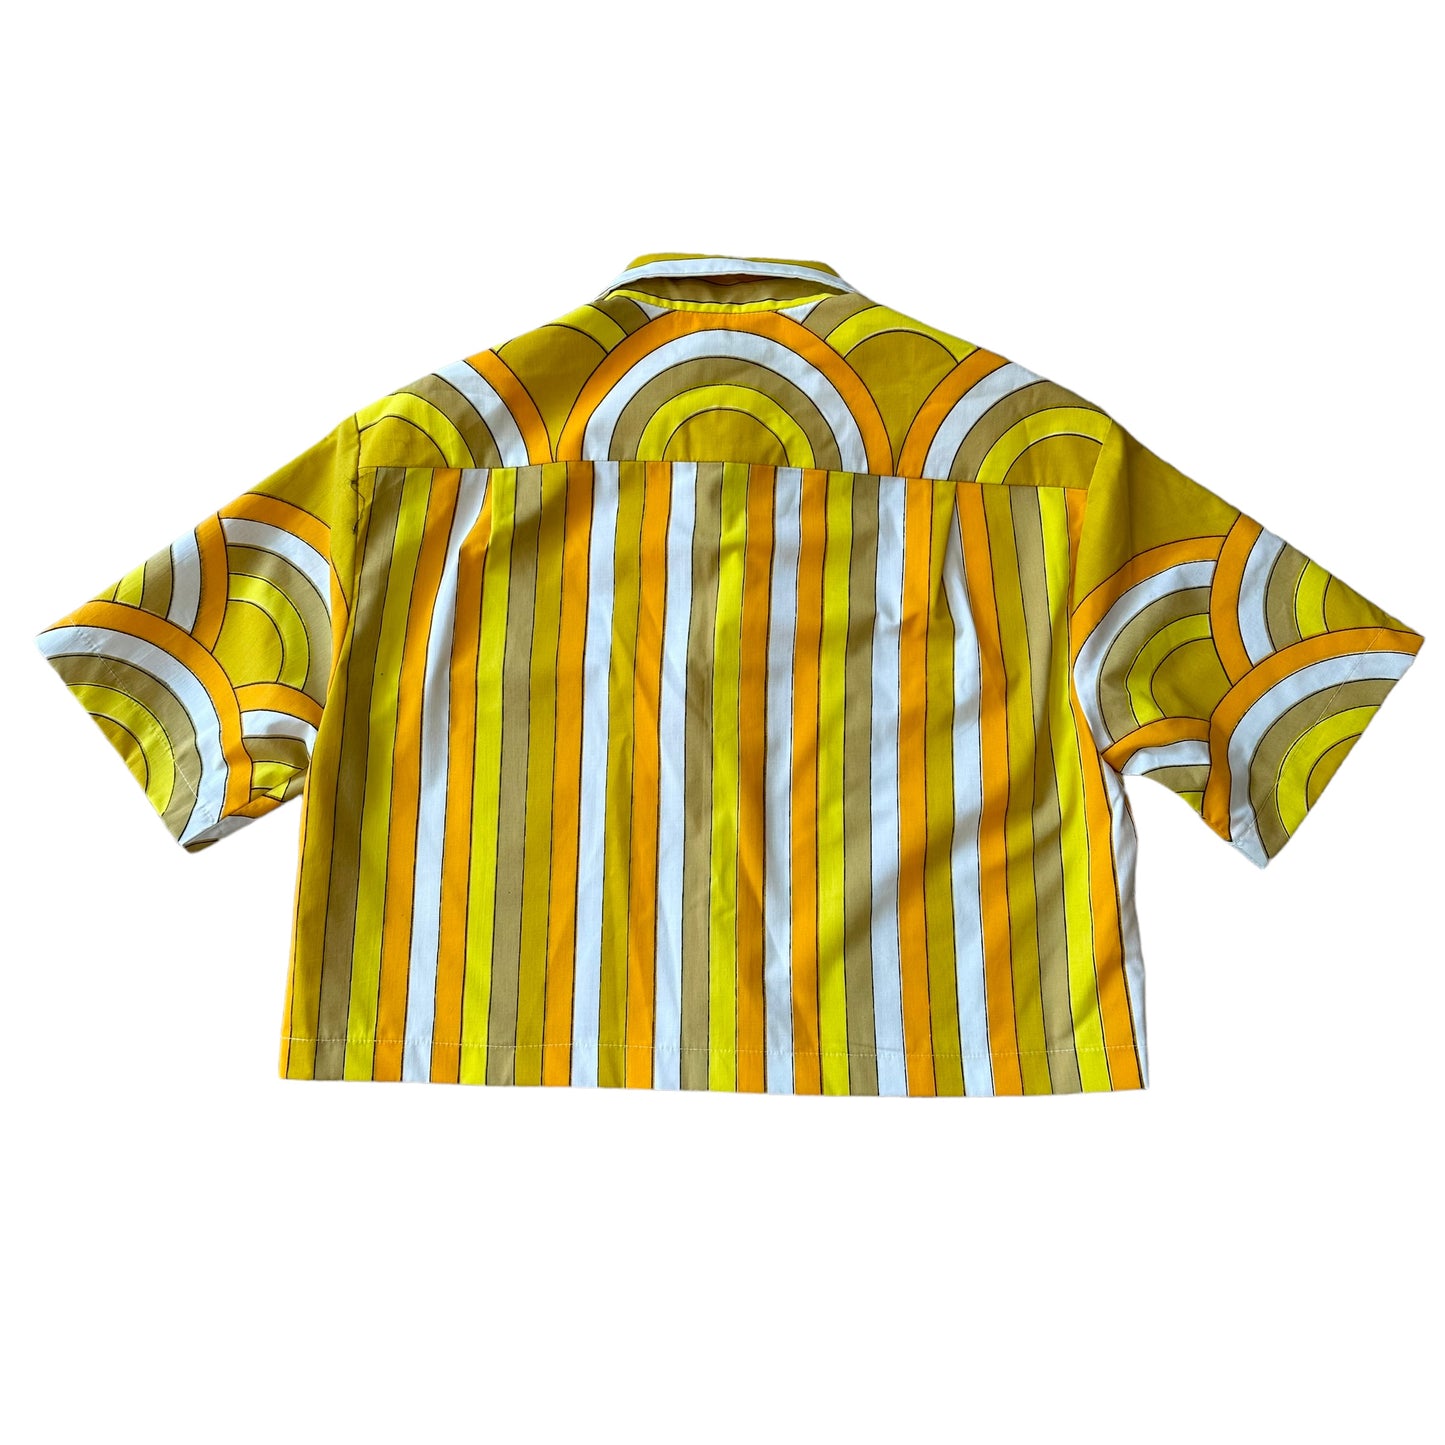 Venice Hawaiian shirt in Sunshine Stripe